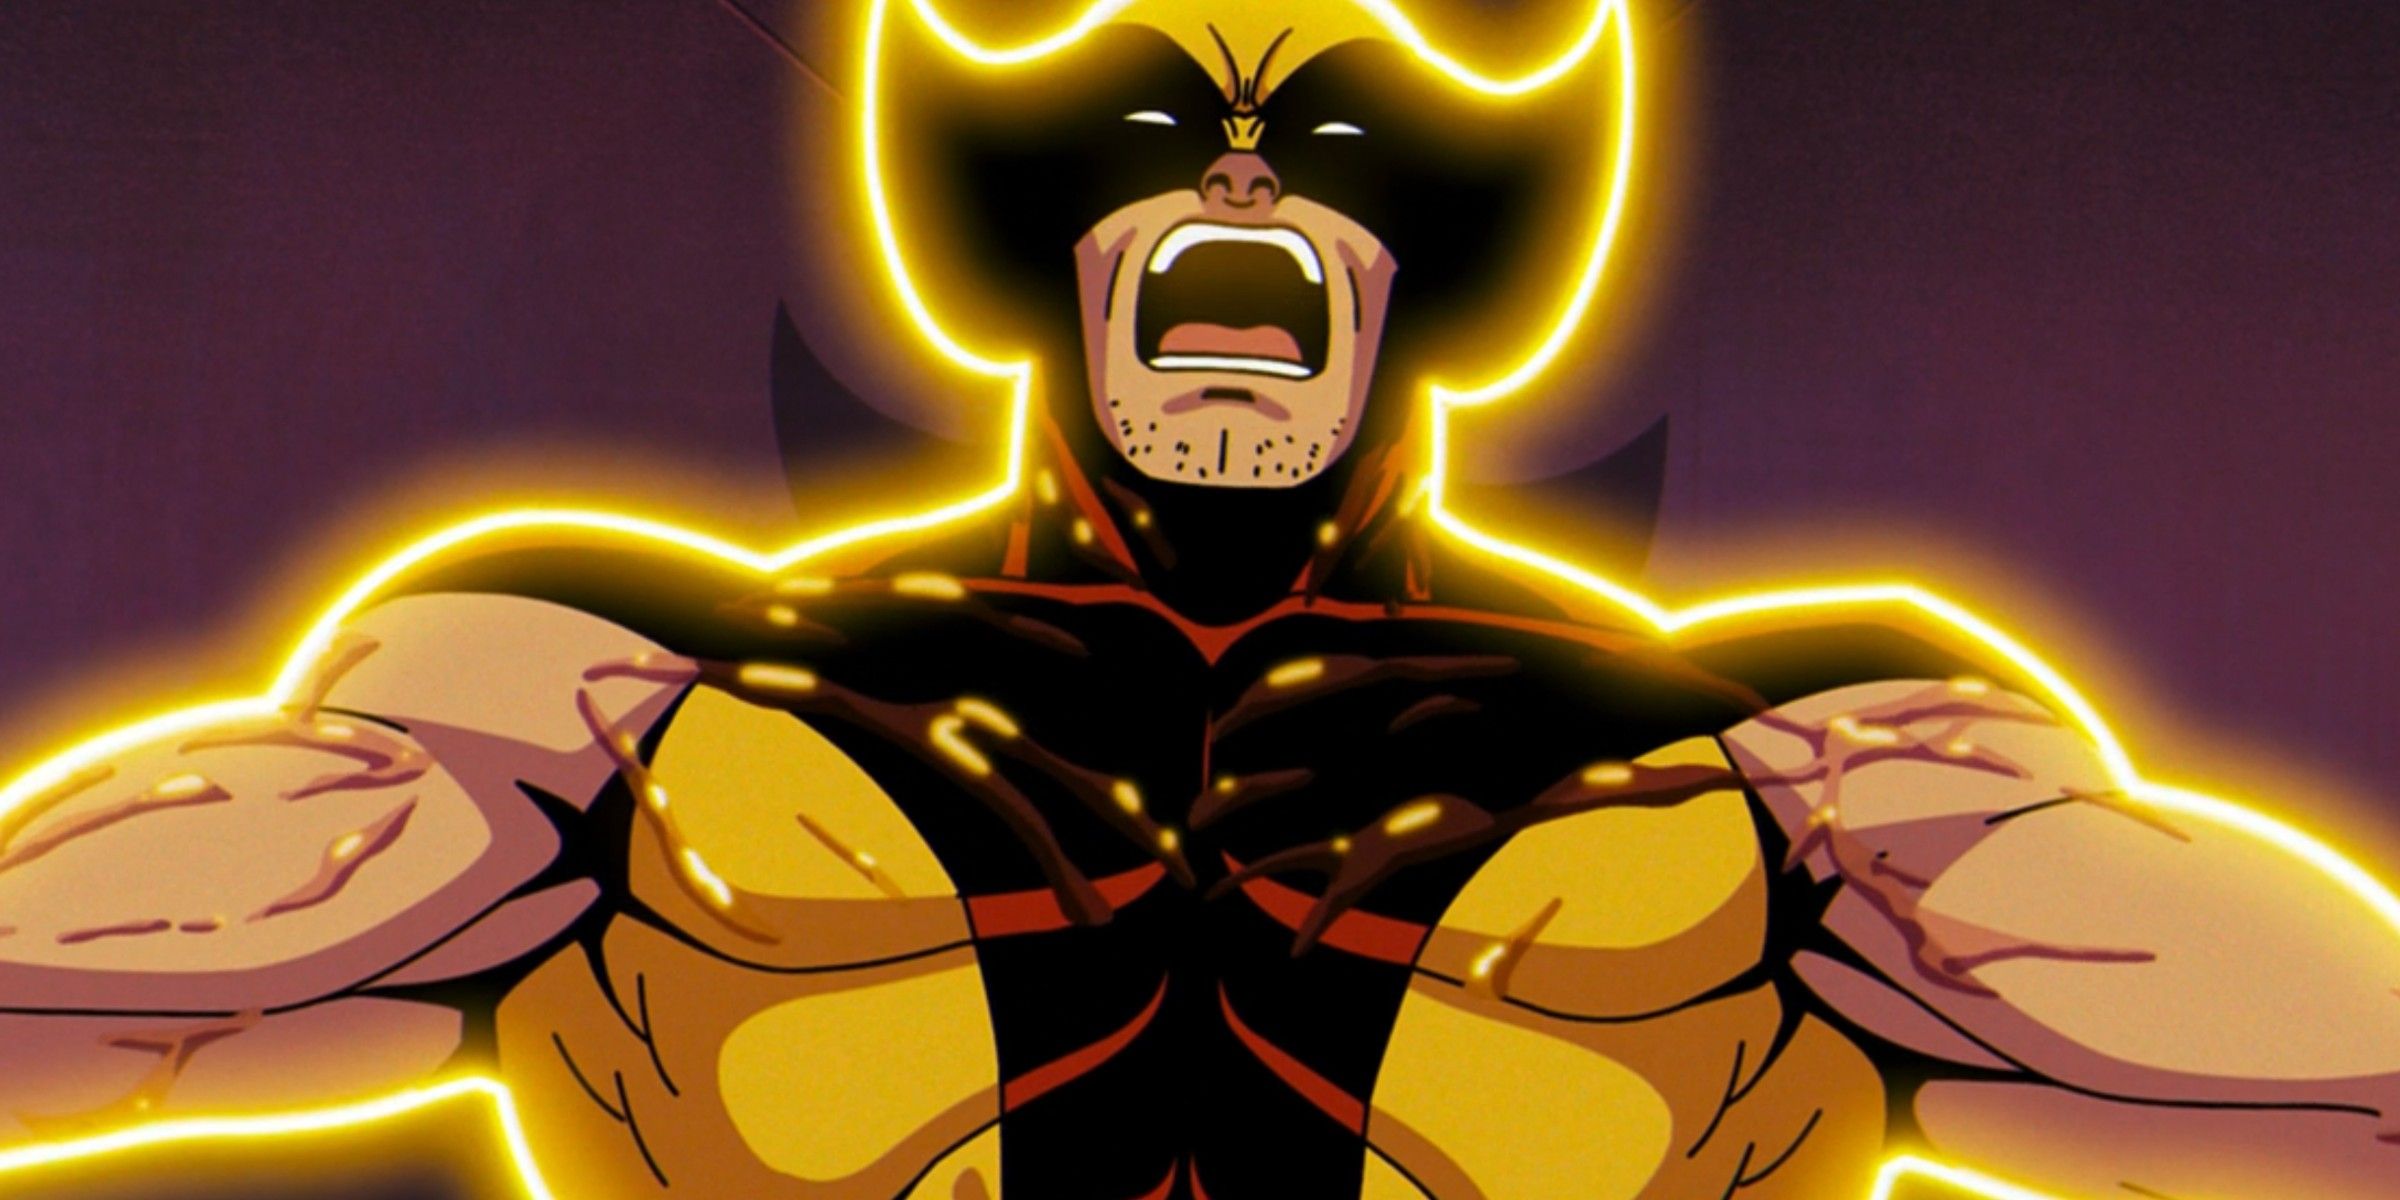 Magneto attacks Wolverine in X-Men 97 episode 9